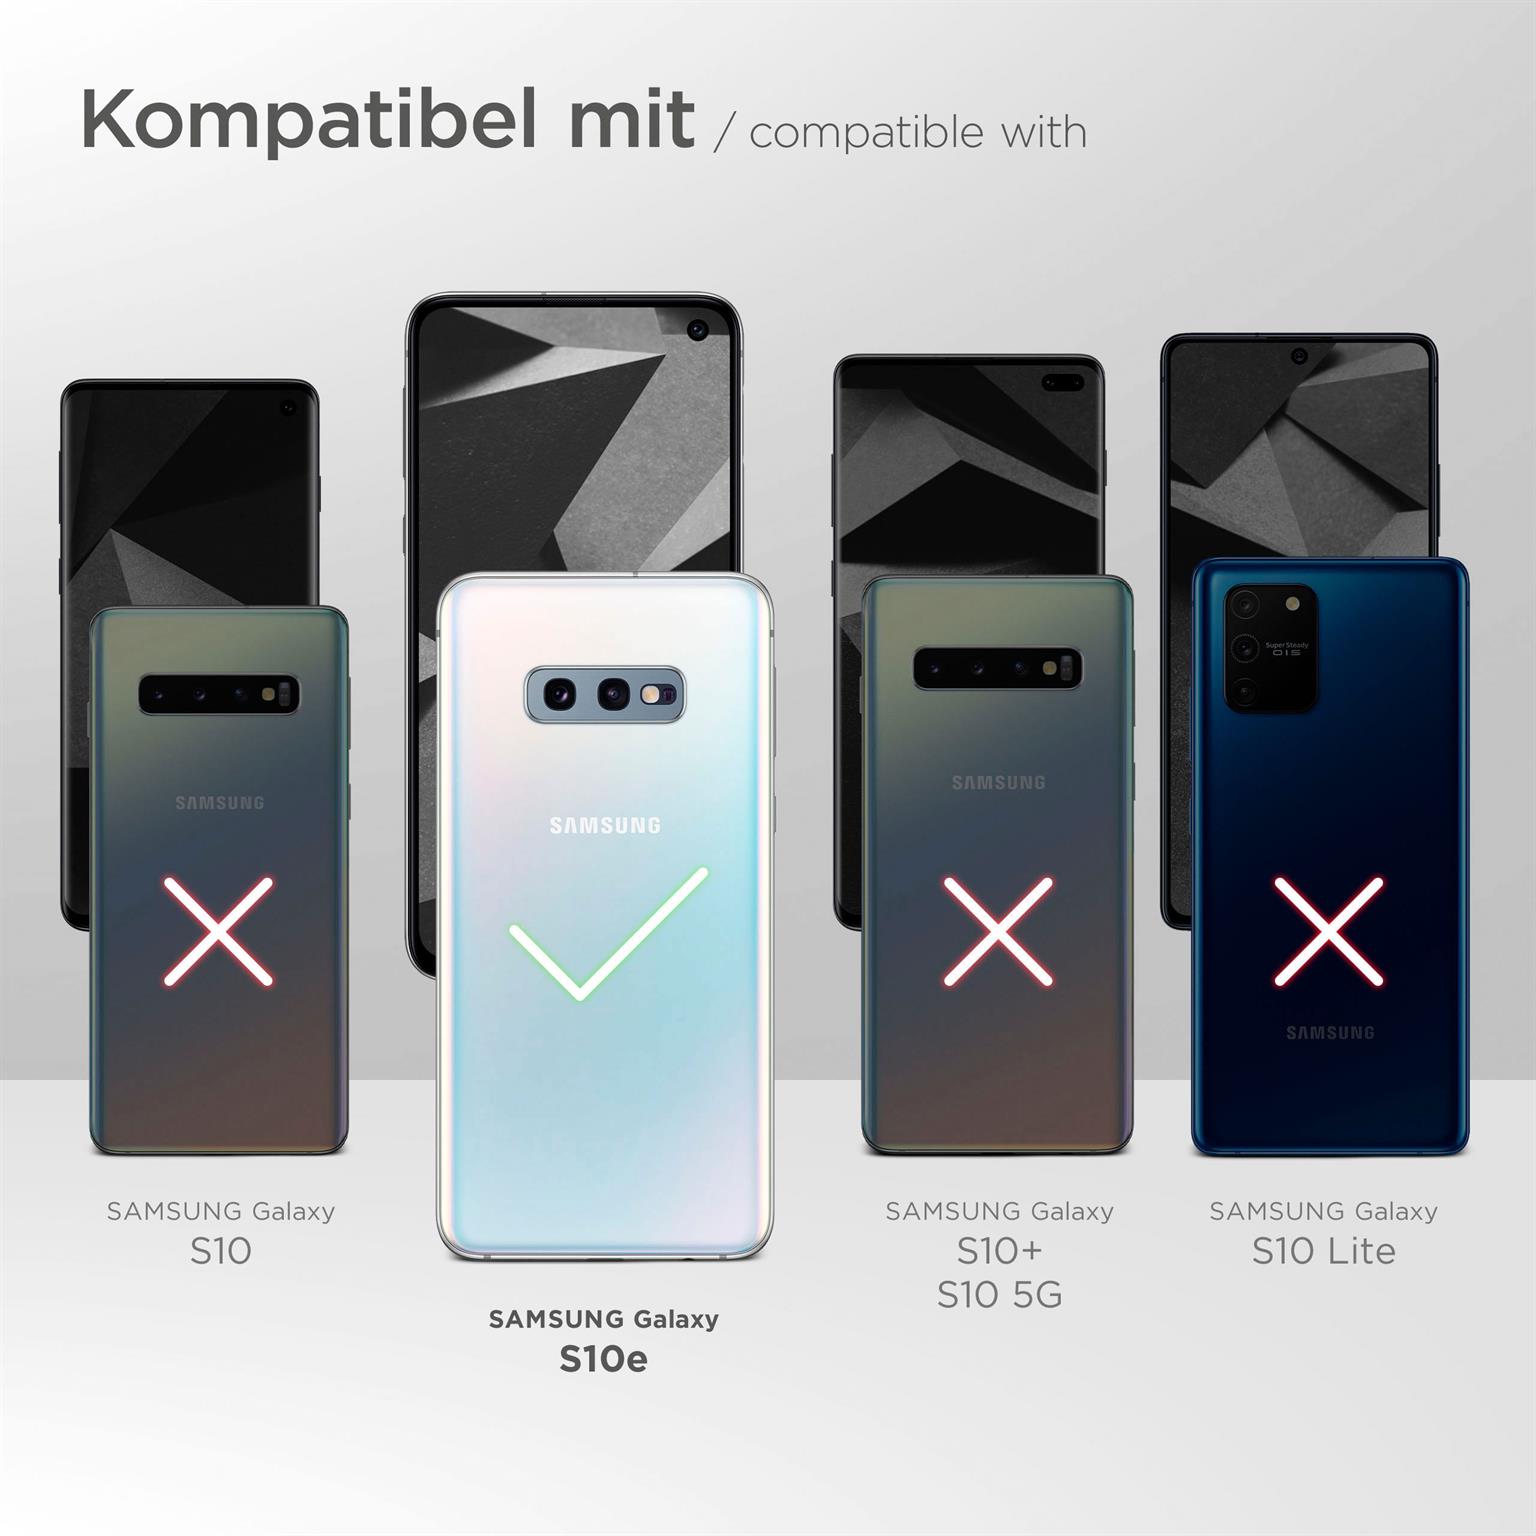 moex Casual Case für Samsung Galaxy S10e – 360 Grad Schutz Booklet, PU Lederhülle mit Kartenfach